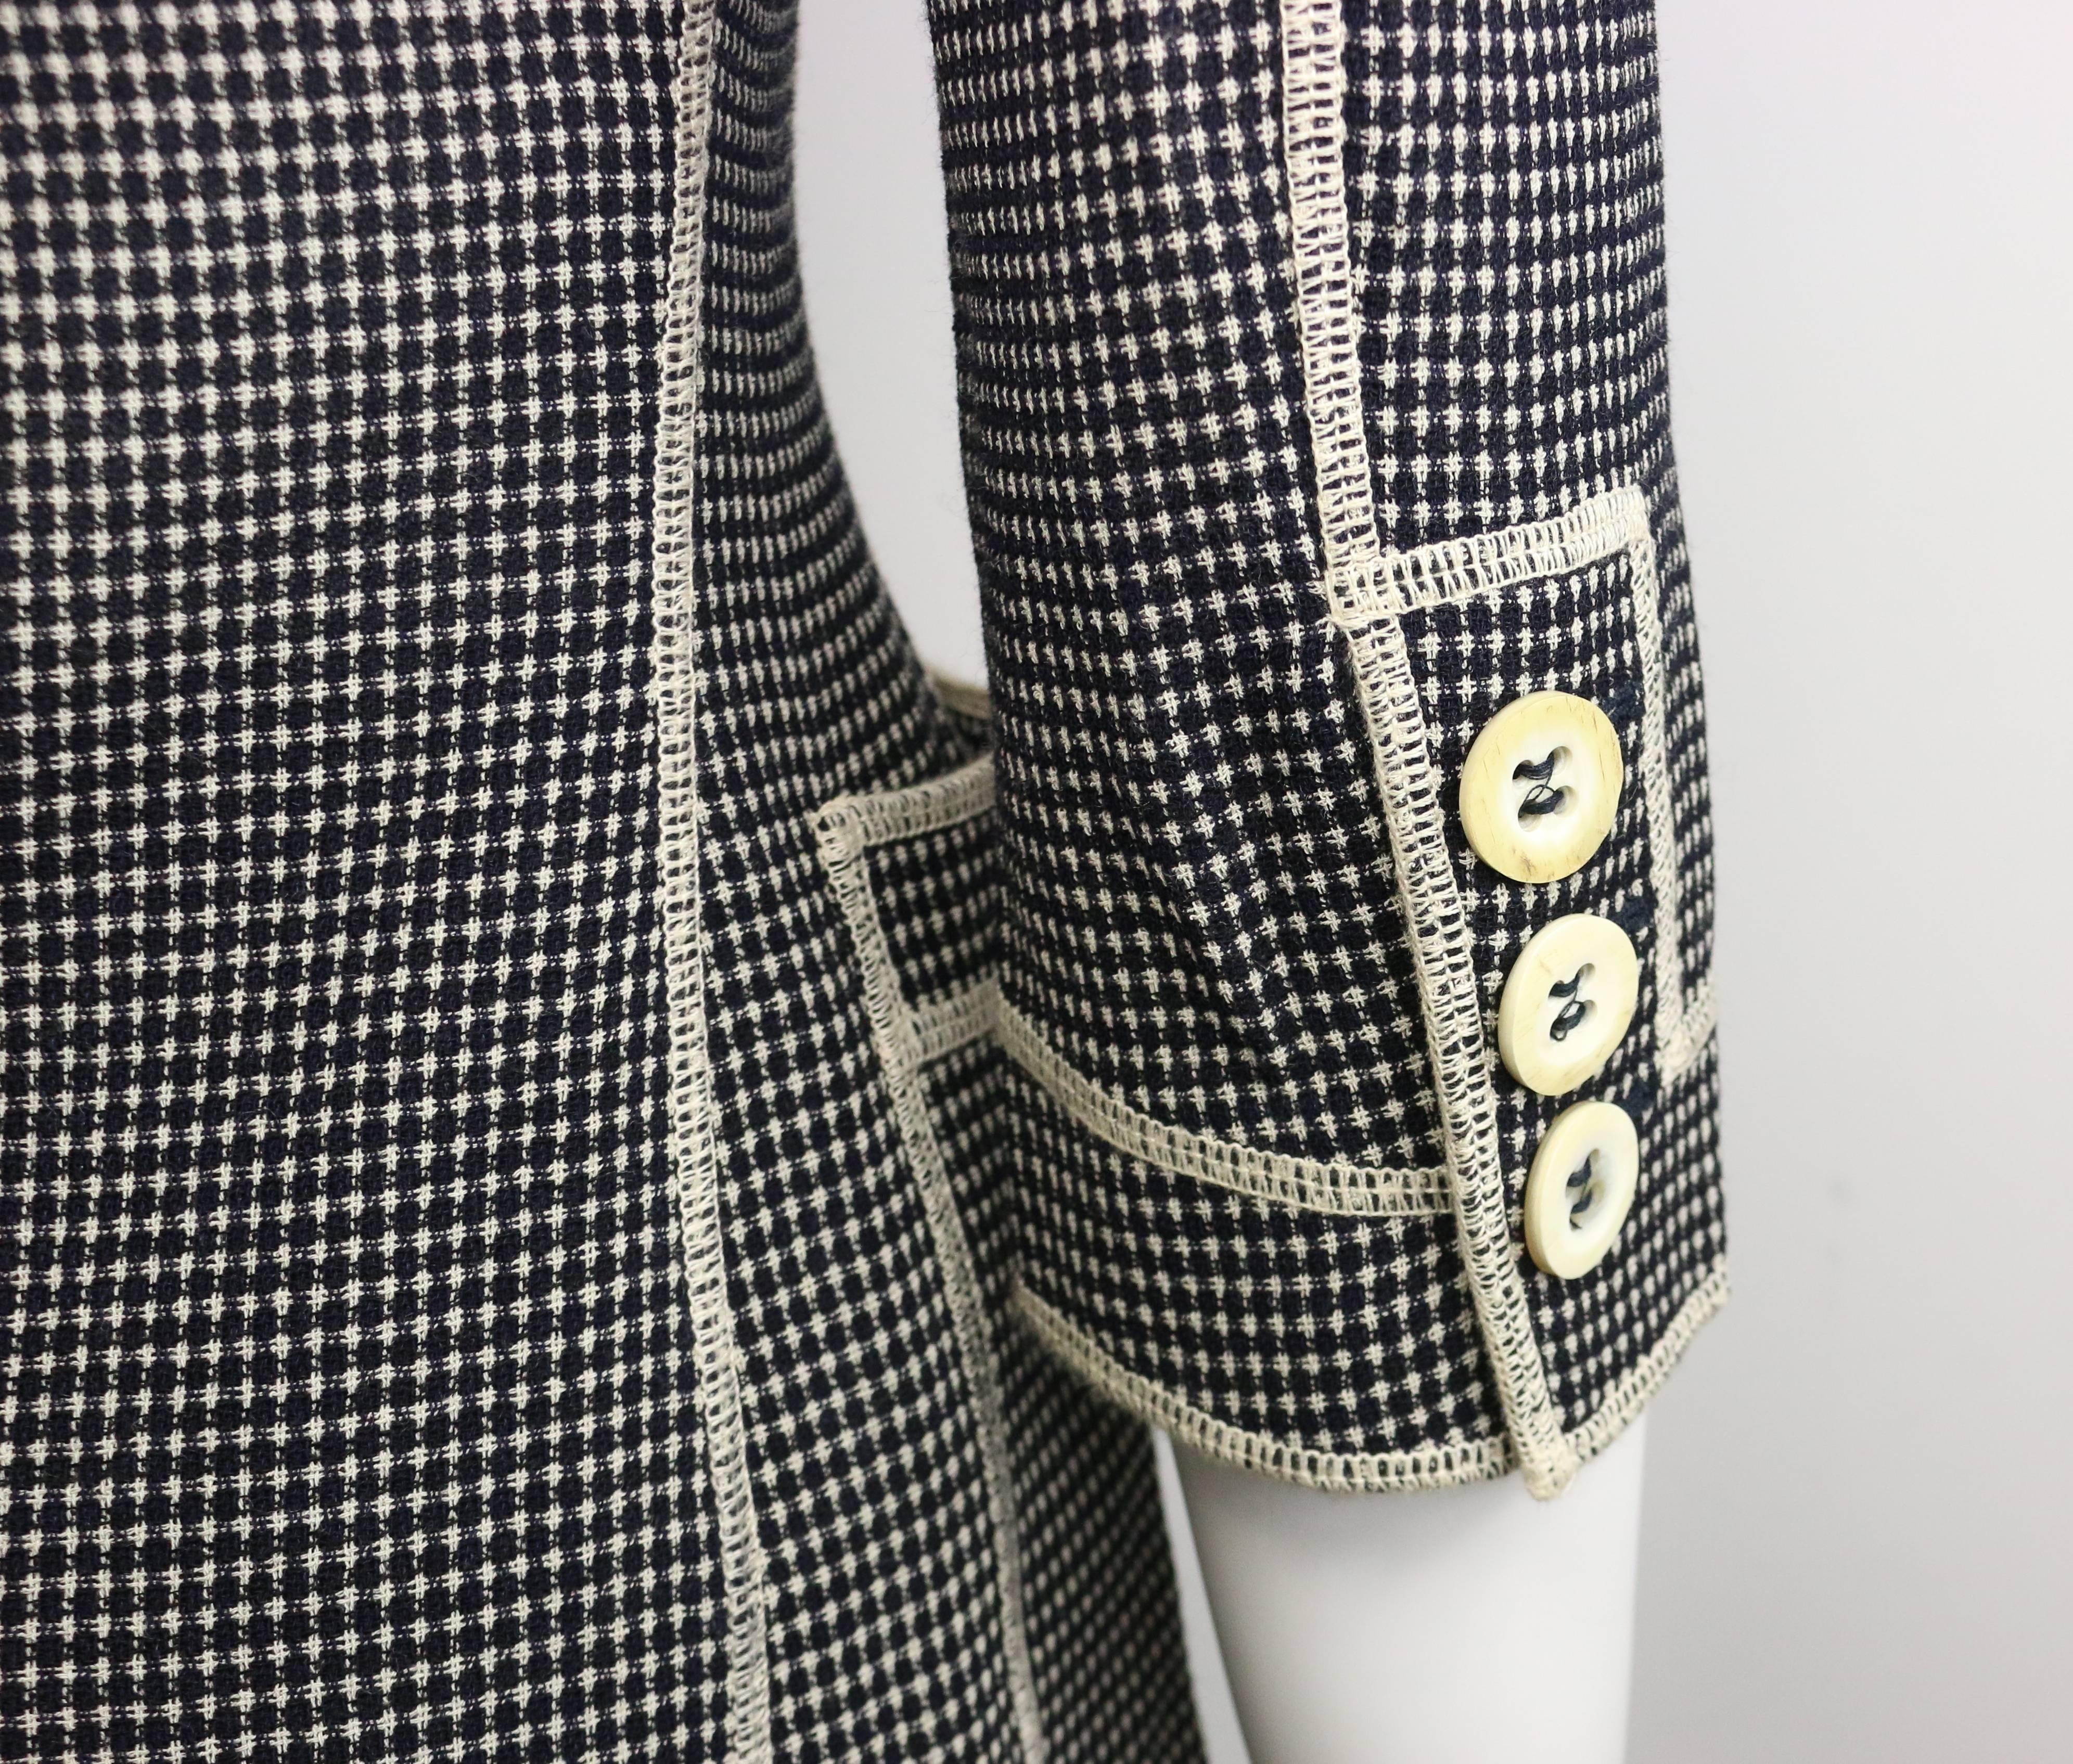 Noir Moschino Couture - Ensemble veste et jupe « Understatement » noires et blanches en vente